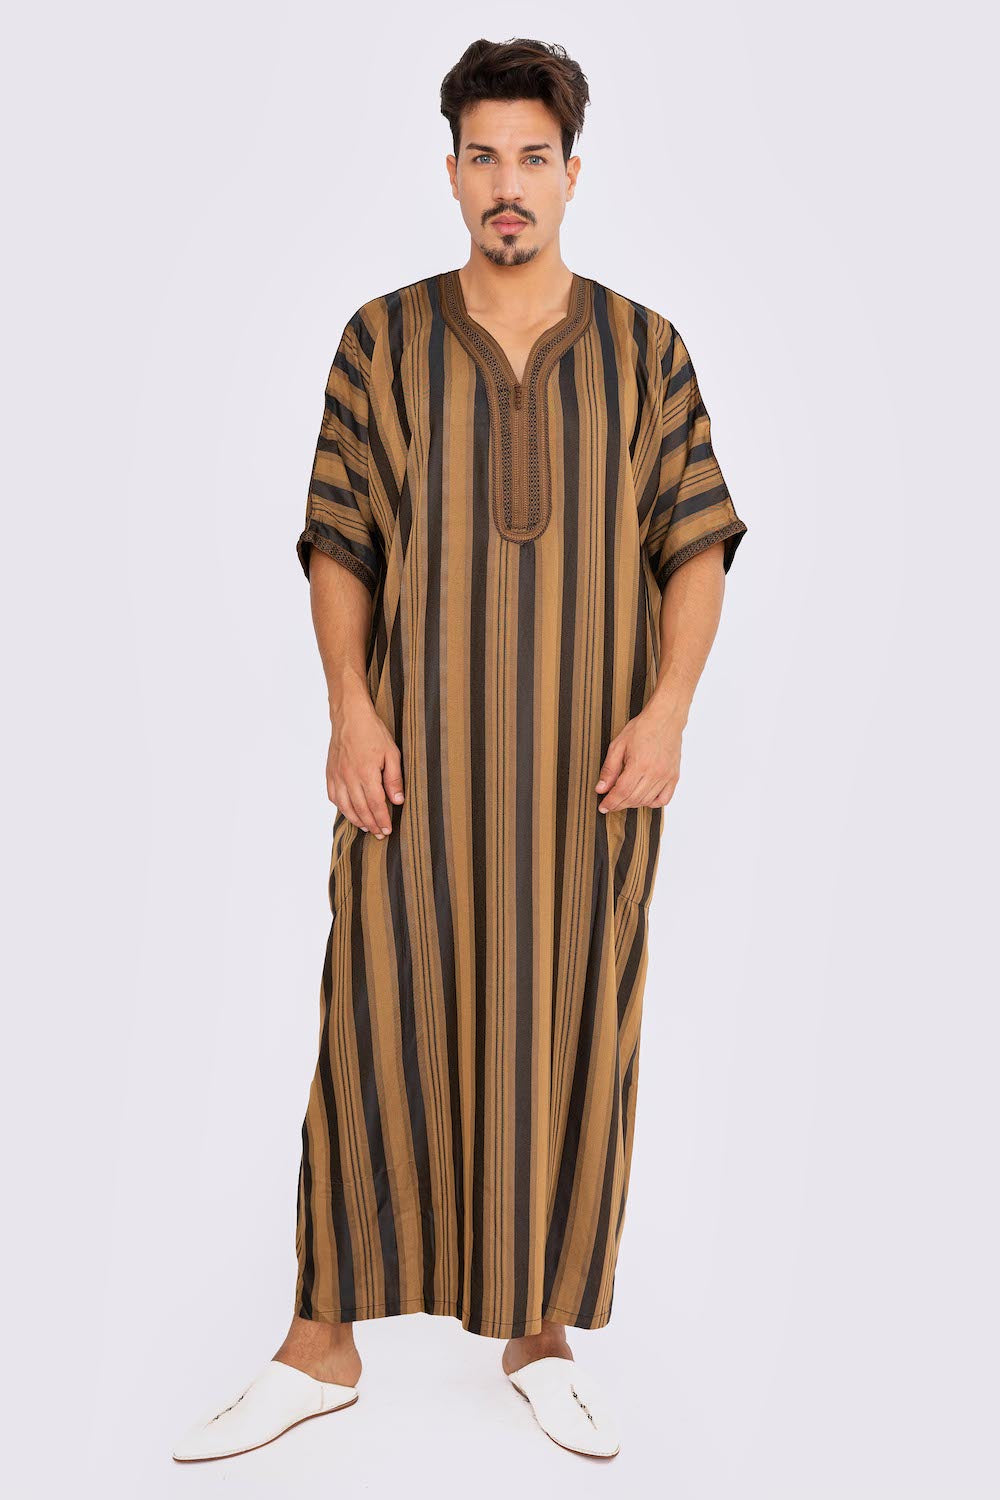 Gandoura Men's Short Sleeve Long Striped Thobe in Black & Brown